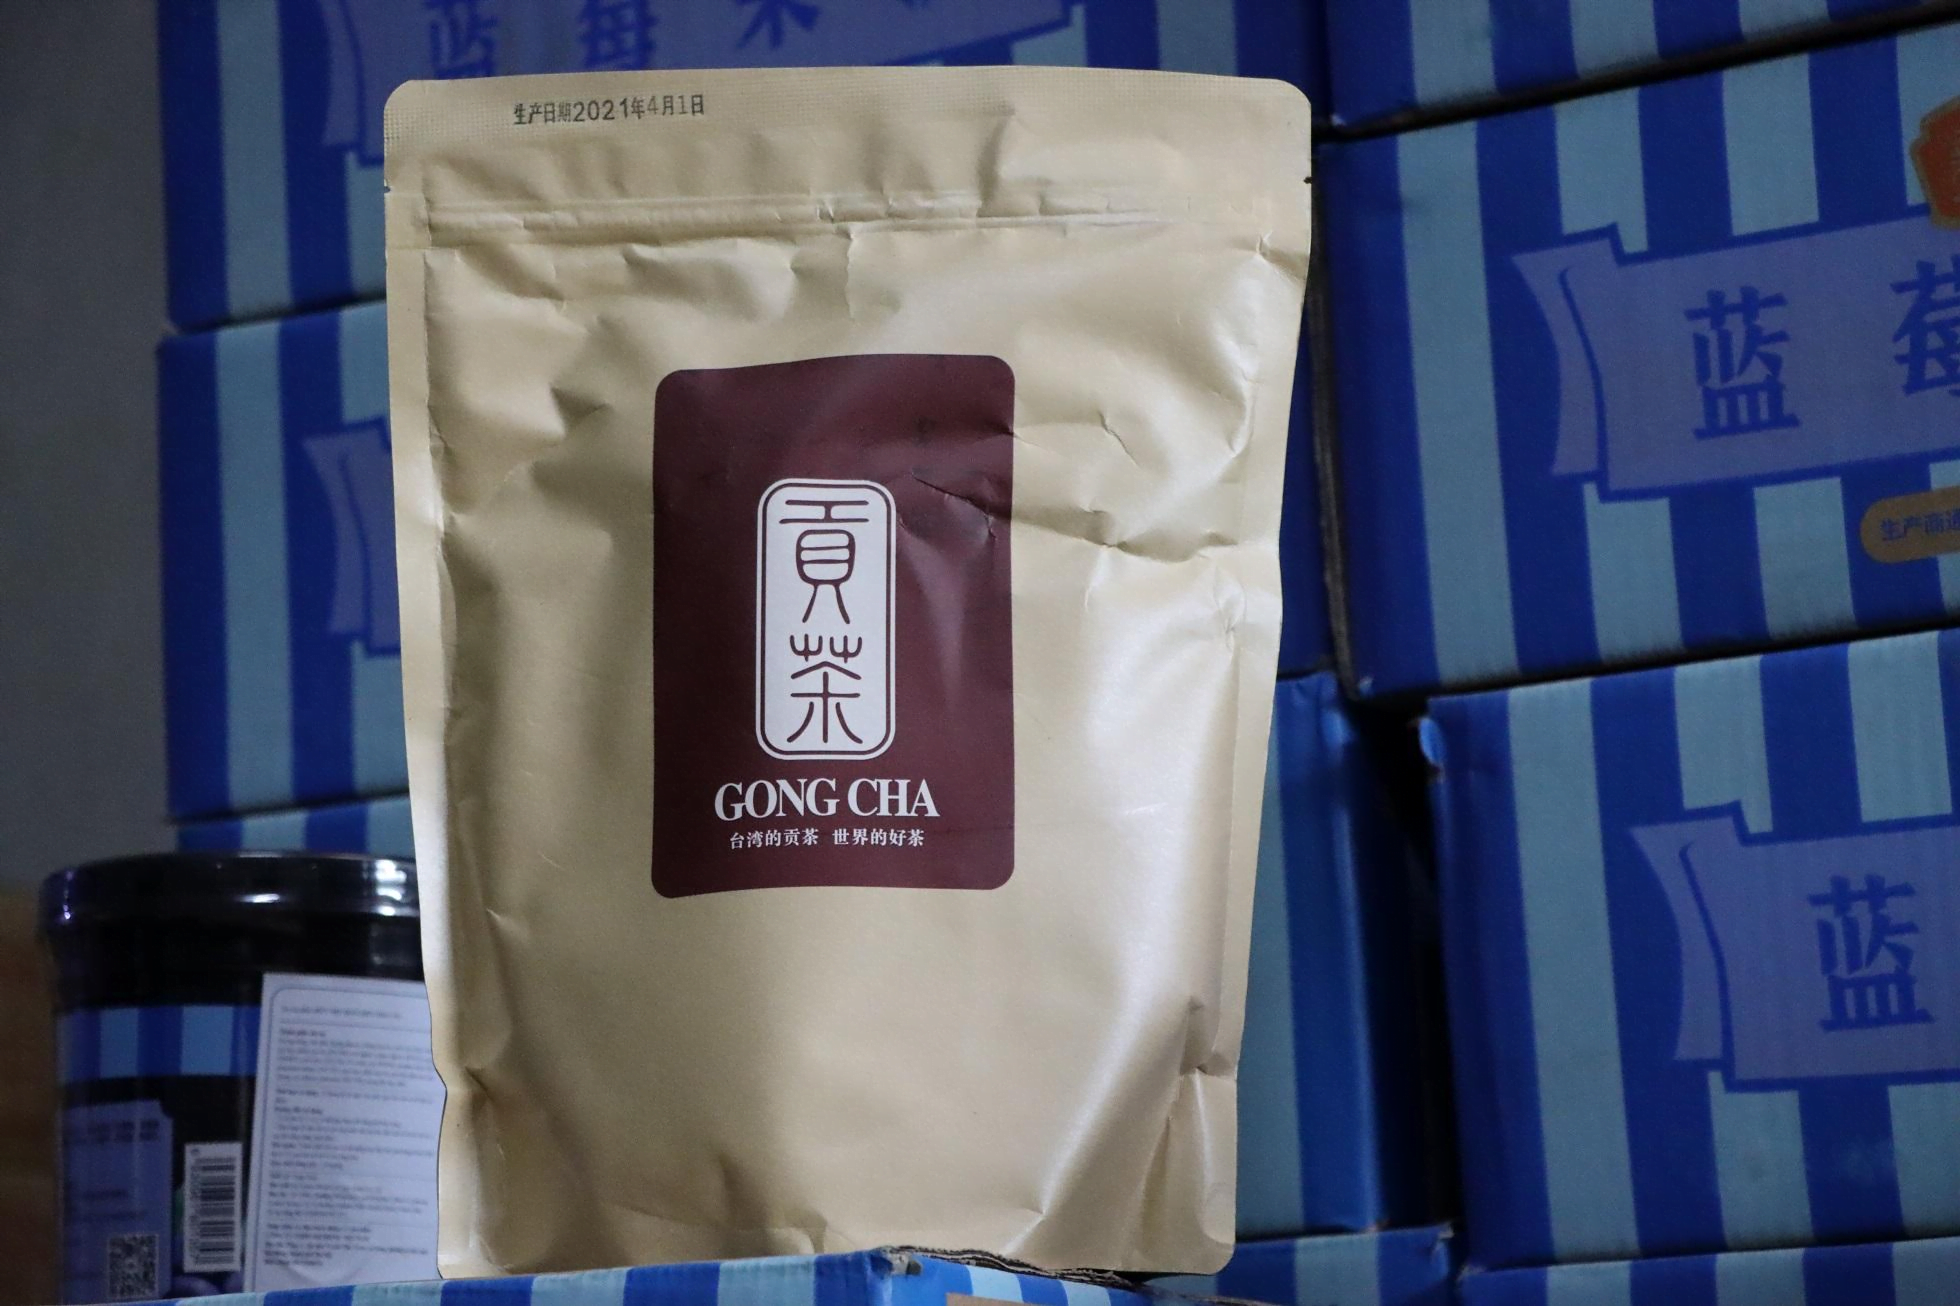 Sản phẩm mang thương hiệu trà sữa Gong Cha được phát hiện tại kho hàng. (Ảnh: Công an TP Hà Nội).